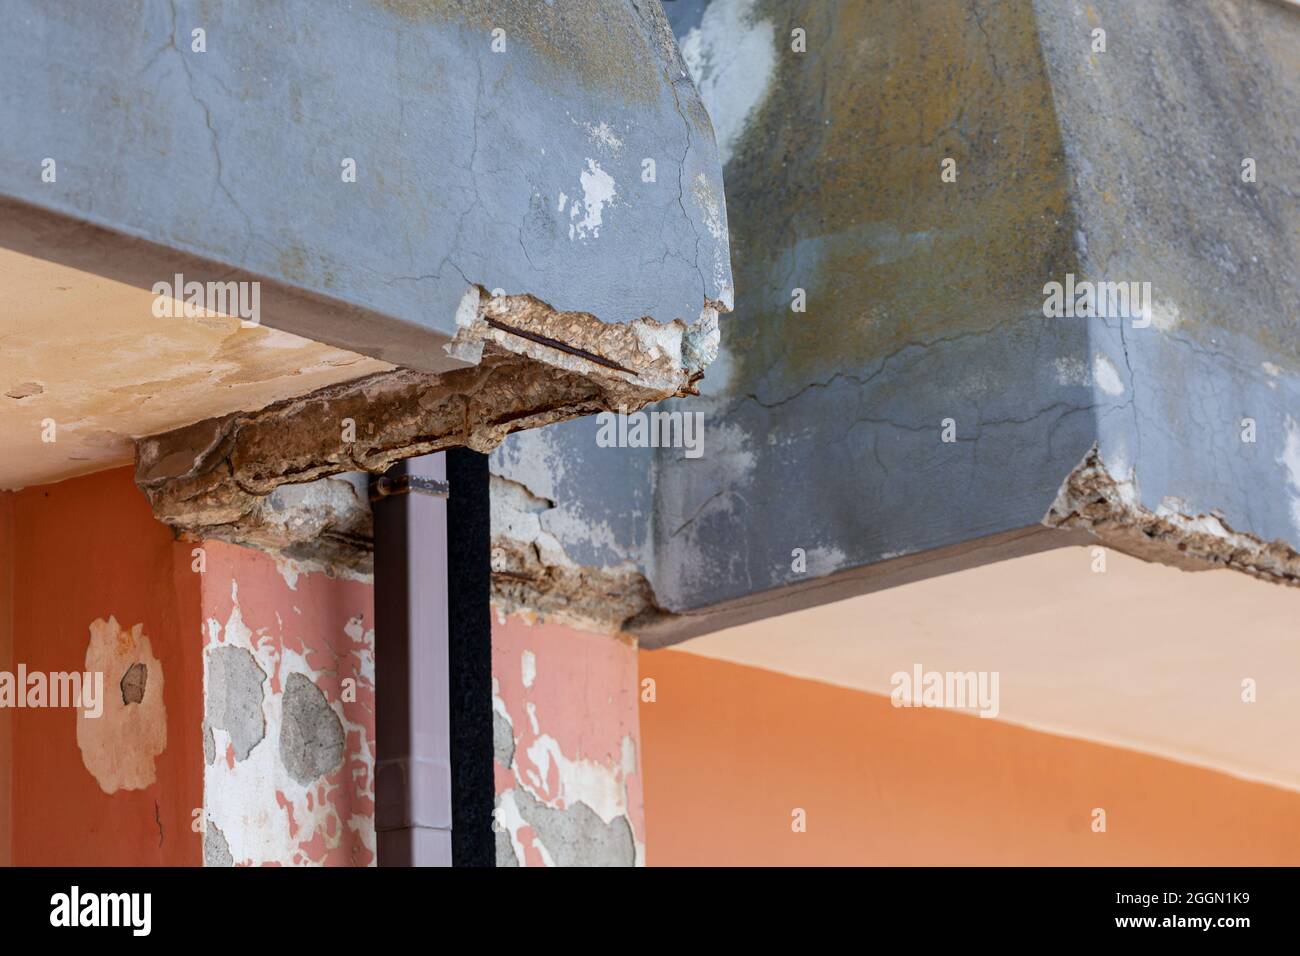 Wand mit rissigem Beton und rostigen Eisen, die renoviert werden müssen. Stockfoto